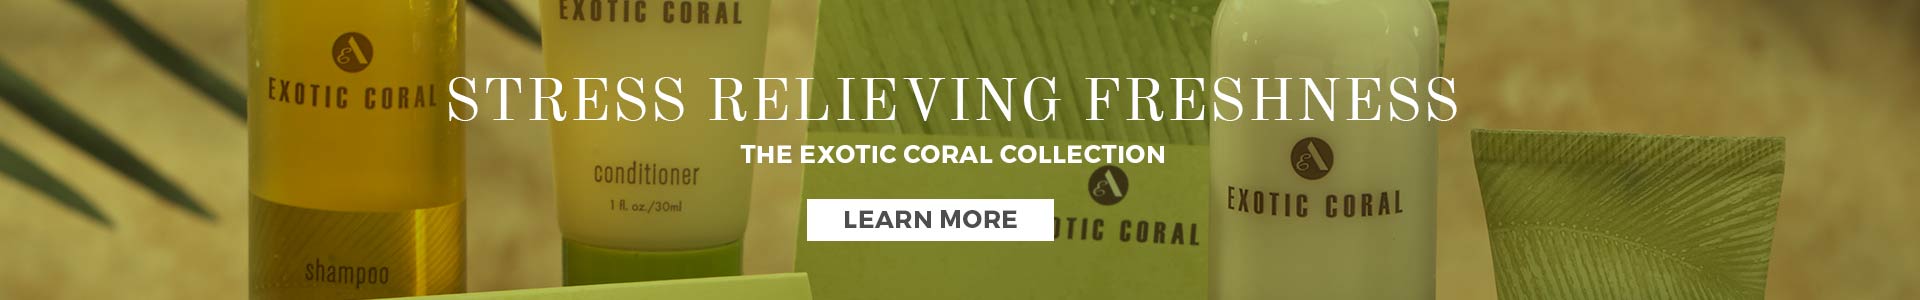 Exotic Coral slide